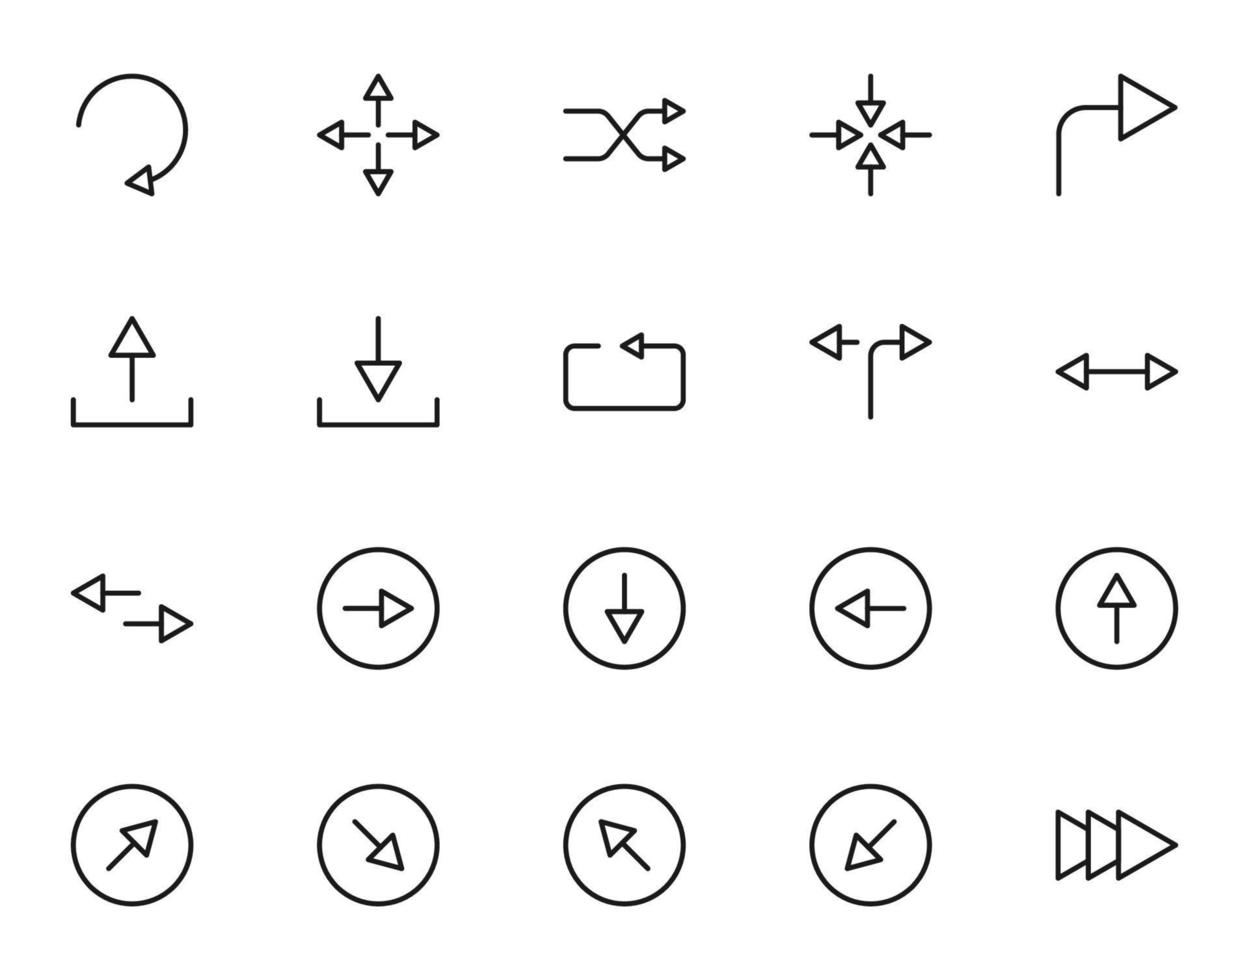 símbolos, sinais, interface e conceito de internet. coleção de ícones simples de vários ícones adequados para aplicativos, sites, artigos etc vetor